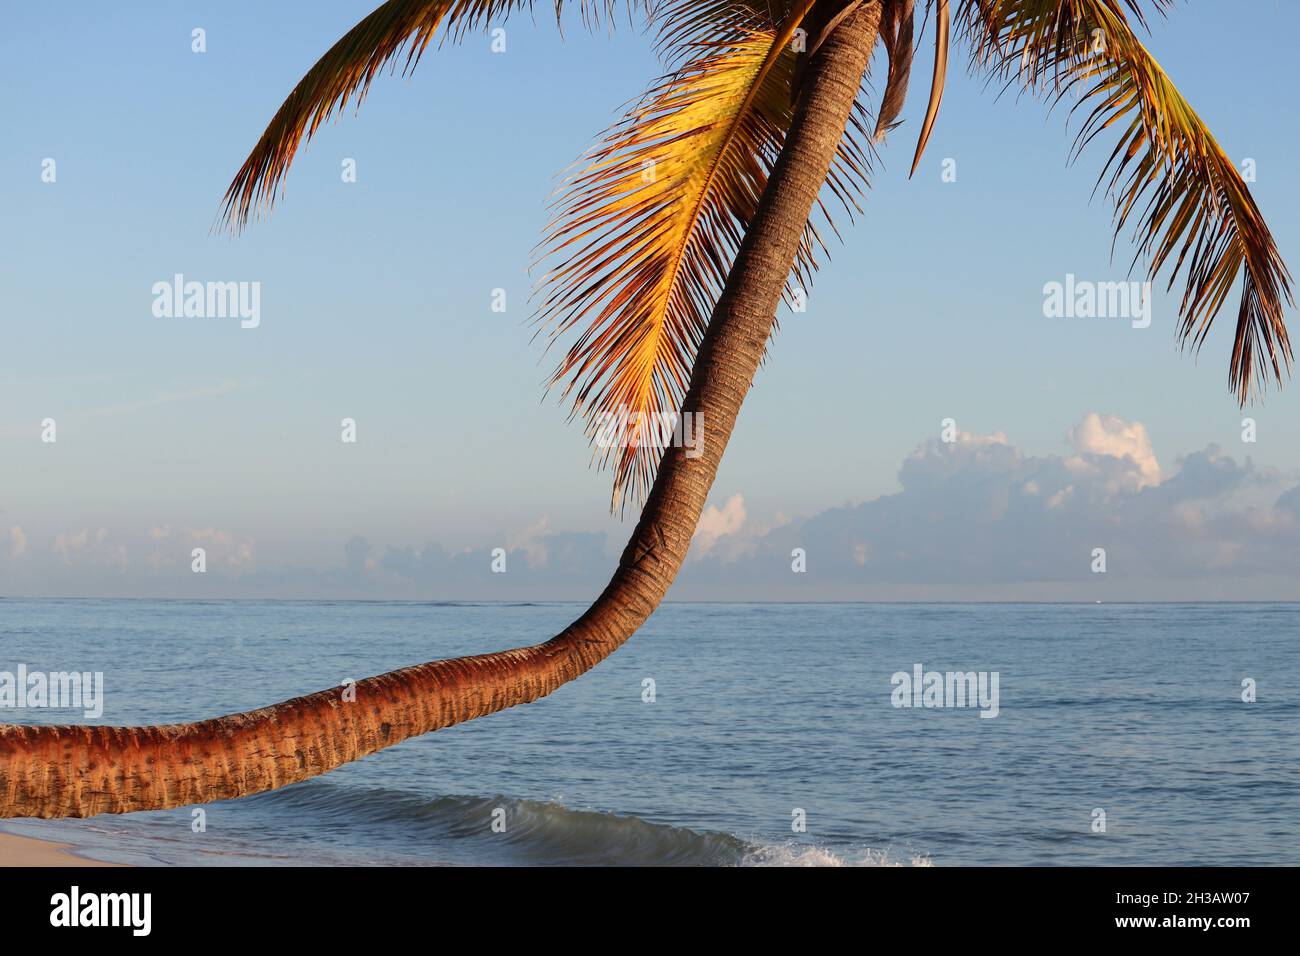 Palmiers à noix de coco sur fond d'océan et le ciel du matin.Plage tropicale, vacances sur la côte paradisiaque Banque D'Images